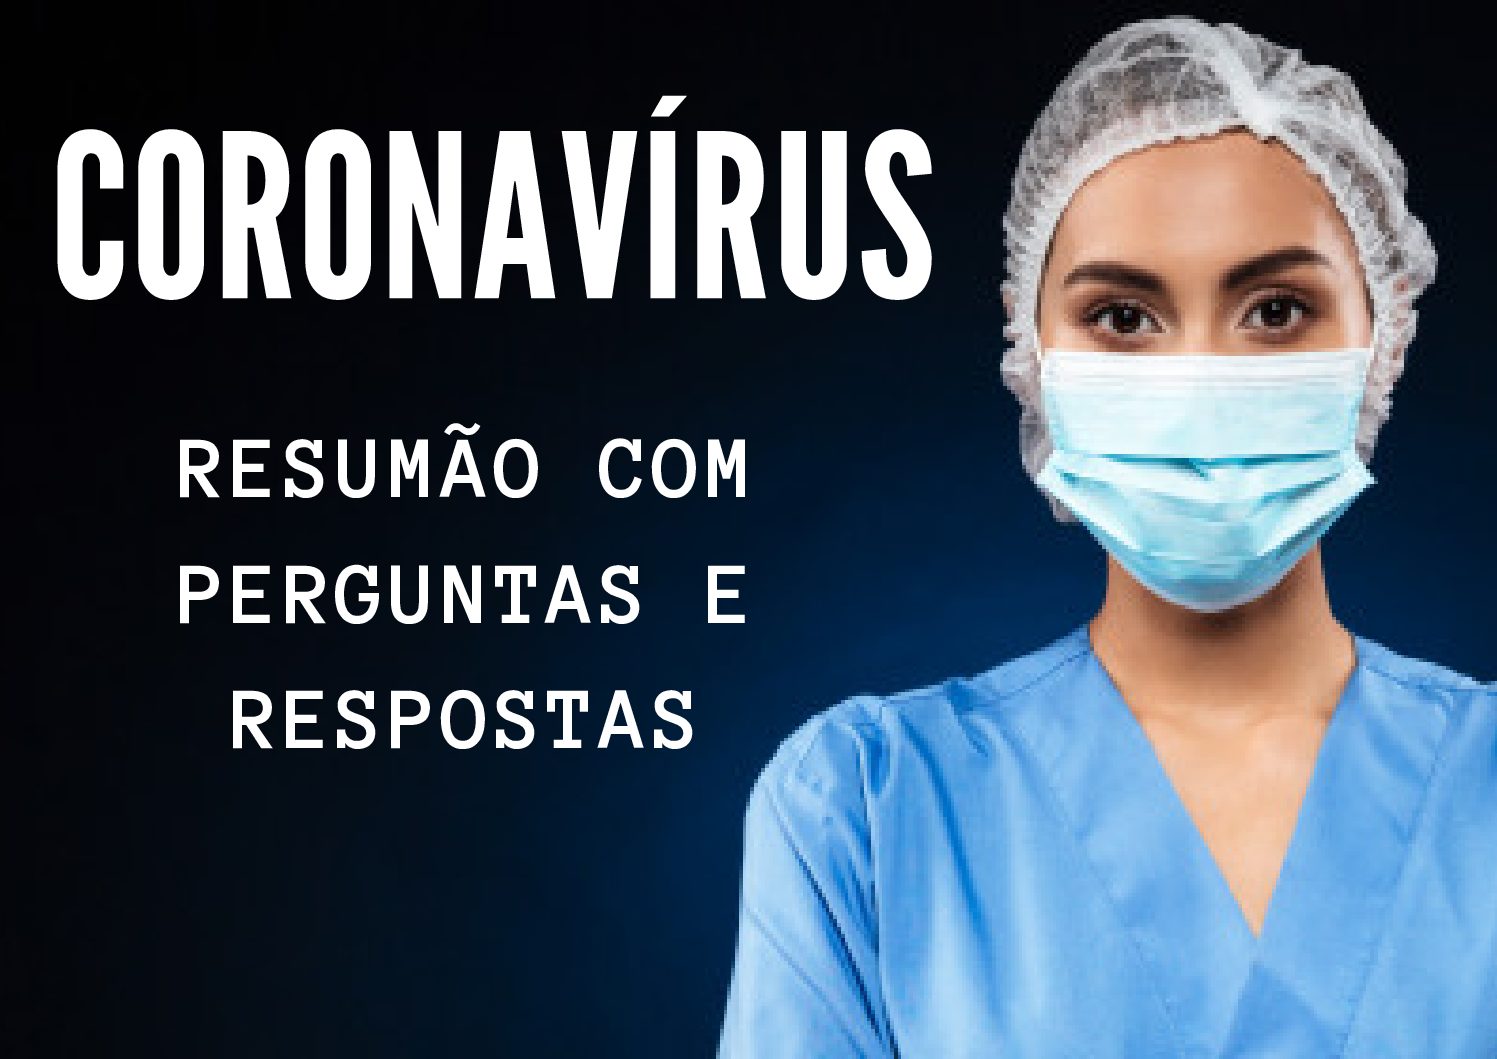 Coronavírus – Resumão do que sabemos até agora!